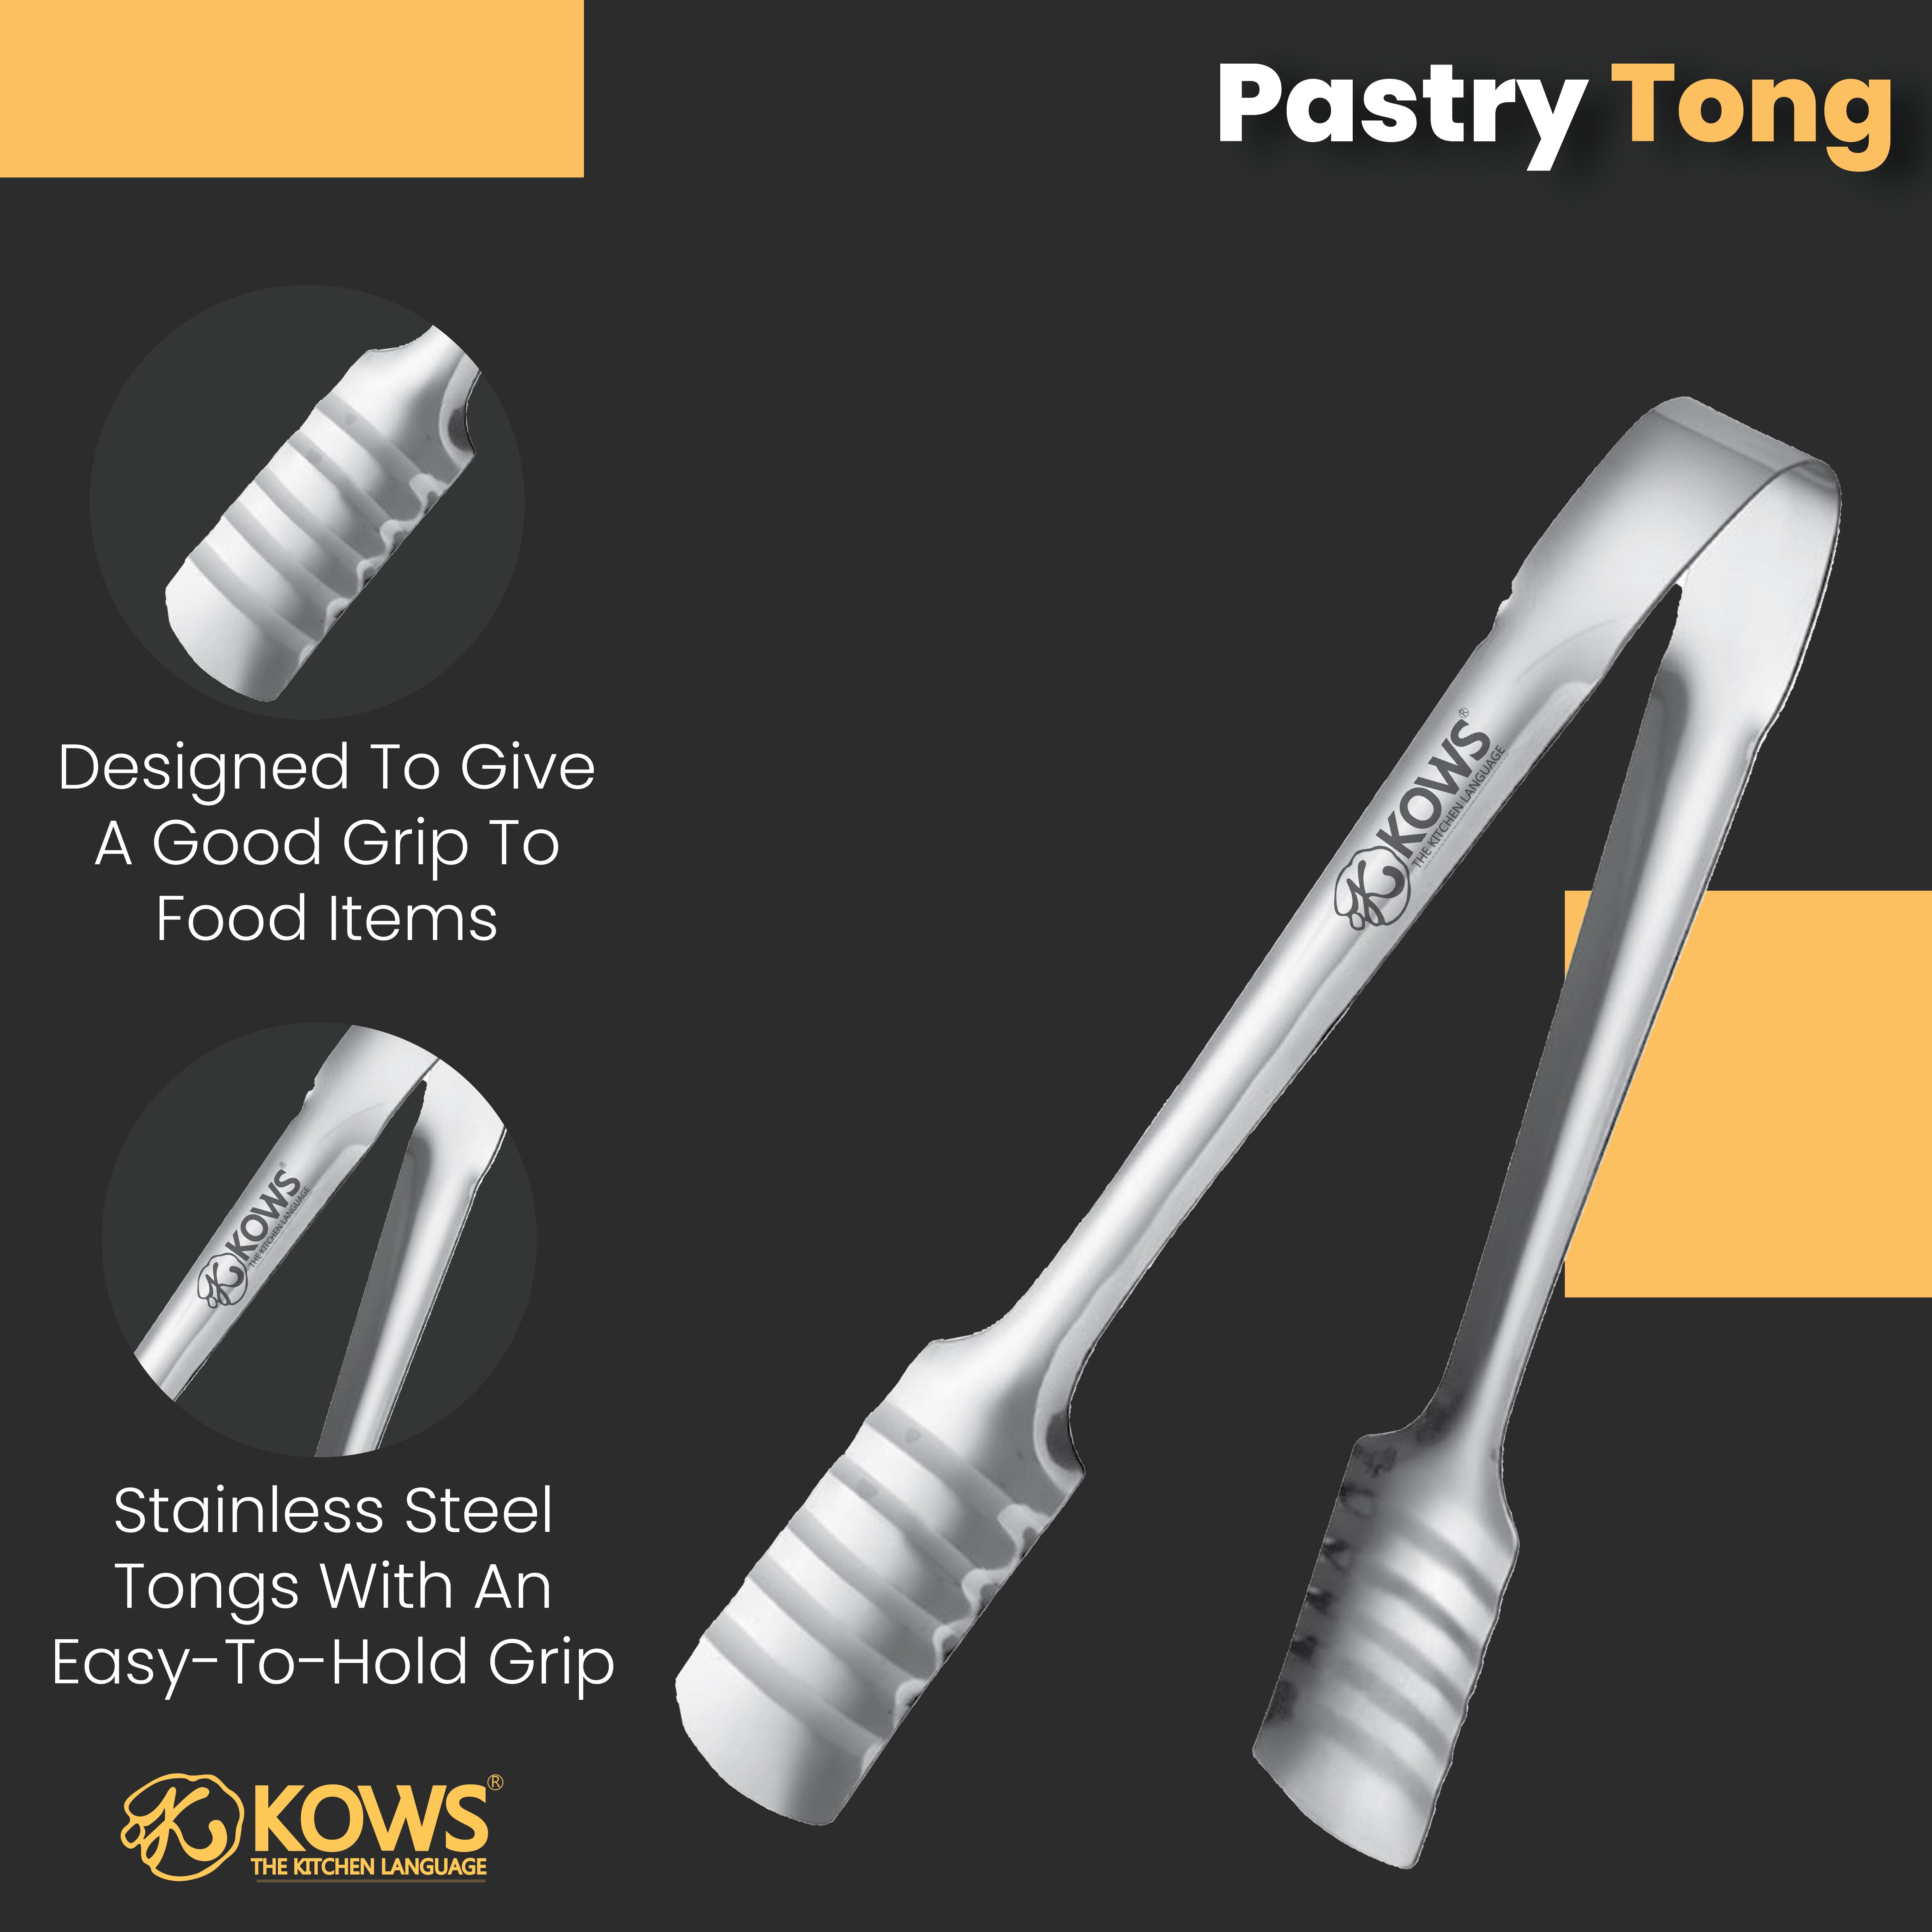 KOWS Pastry tong (TNG 001)